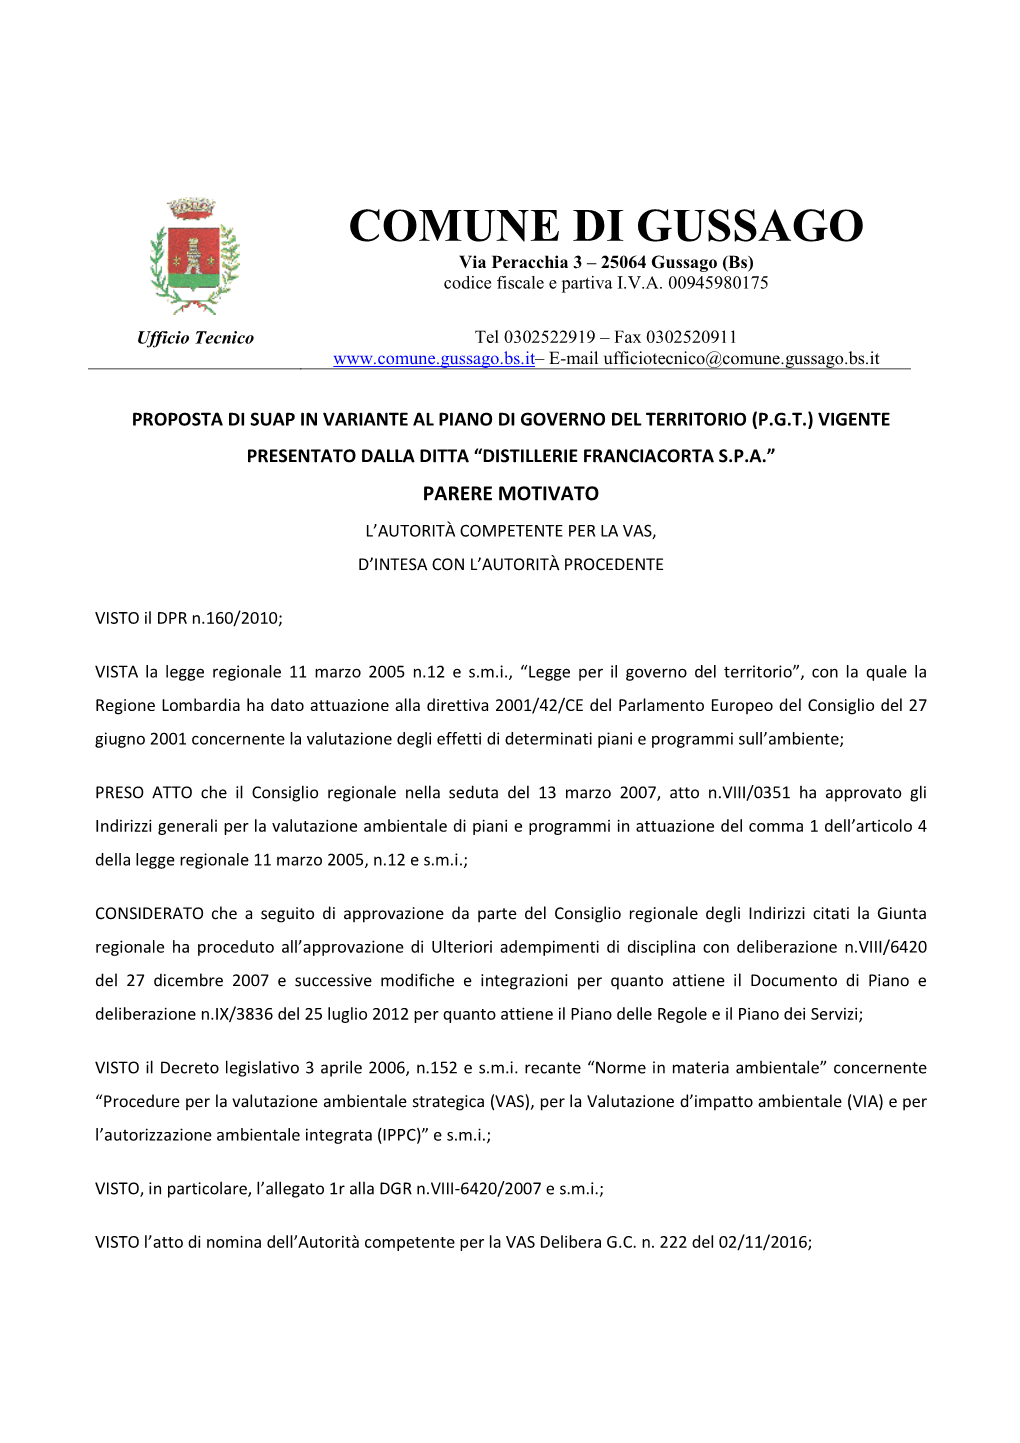 COMUNE DI GUSSAGO Via Peracchia 3 – 25064 Gussago (Bs) Codice Fiscale E Partiva I.V.A